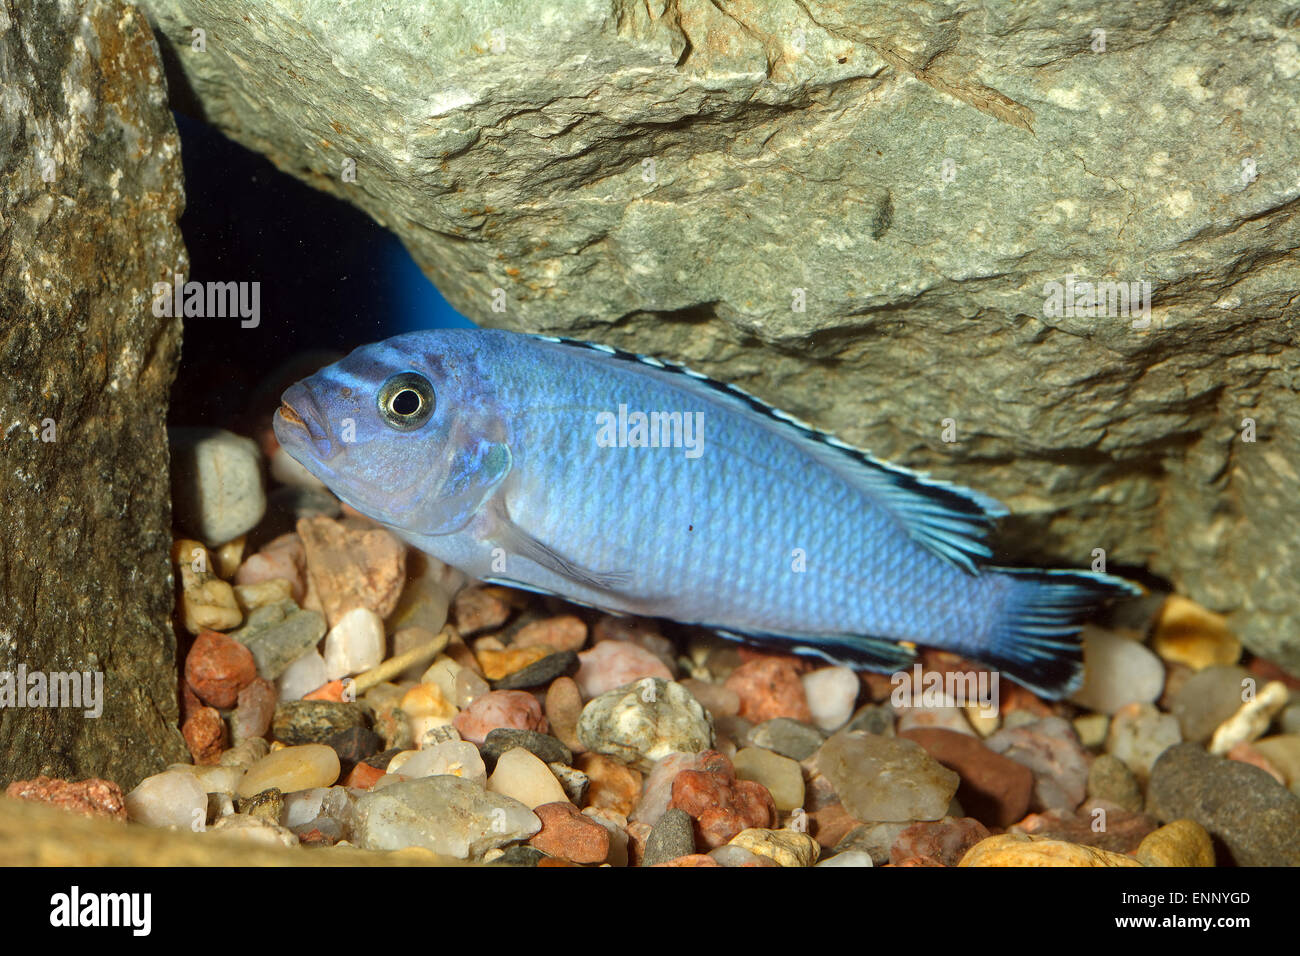 Aquarium fish from genus Pseudotropheus. Stock Photo